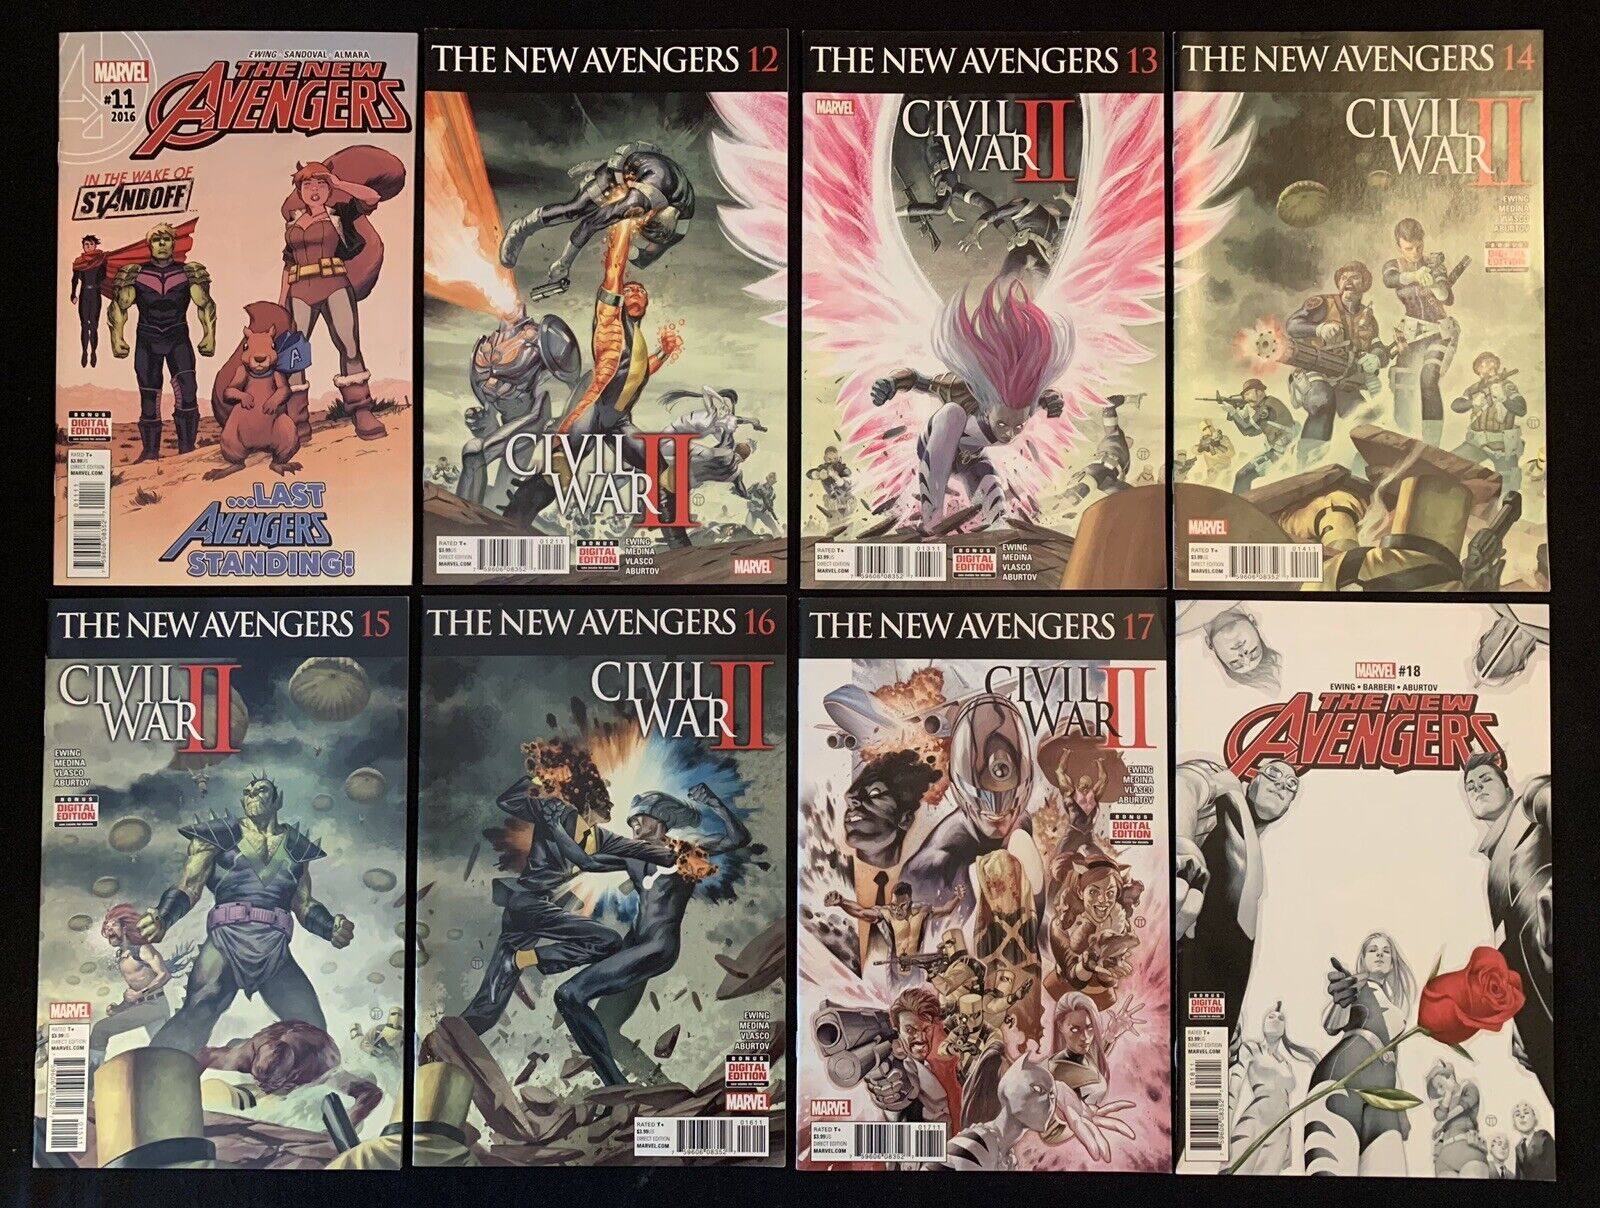 New Avengers #11,12,13,14,15,16,17,18 | Marvel, 2016-17 | Civil War II | VF/NM